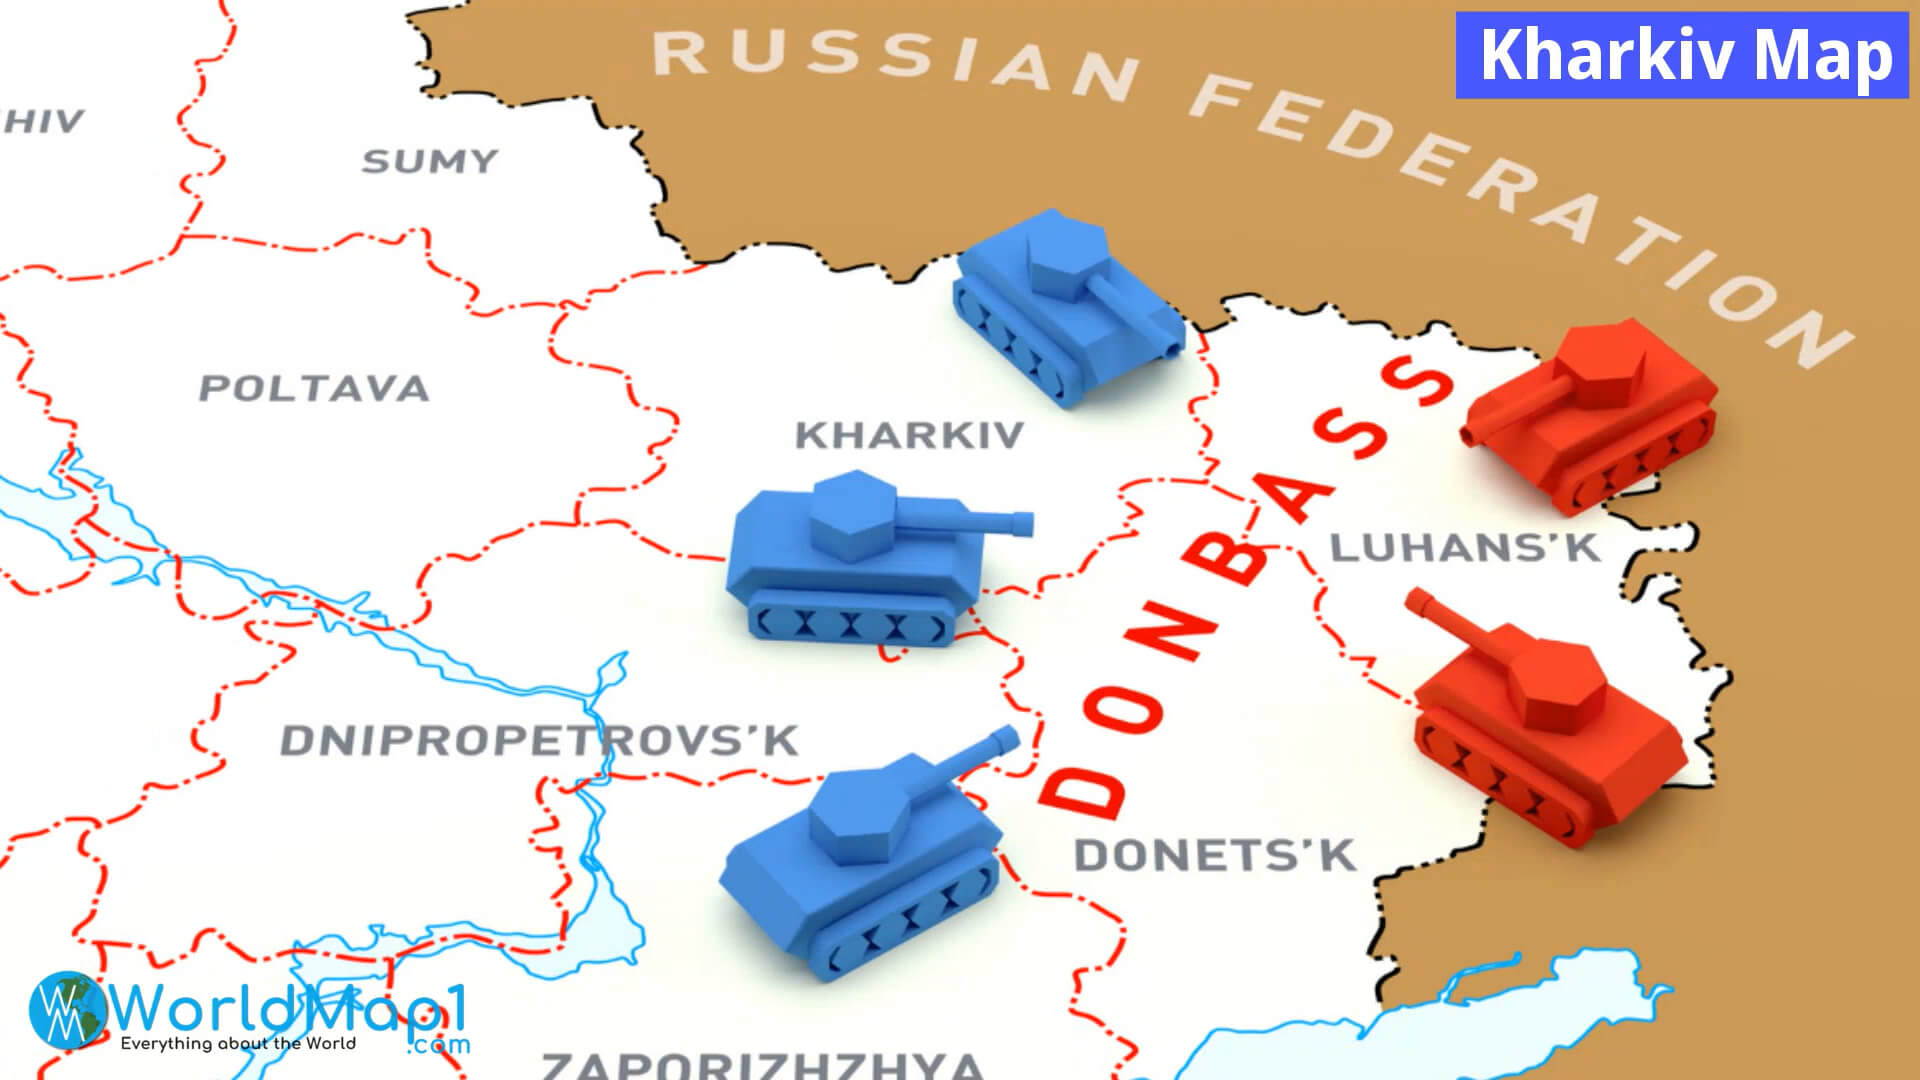 Kharkiv Map Donbass